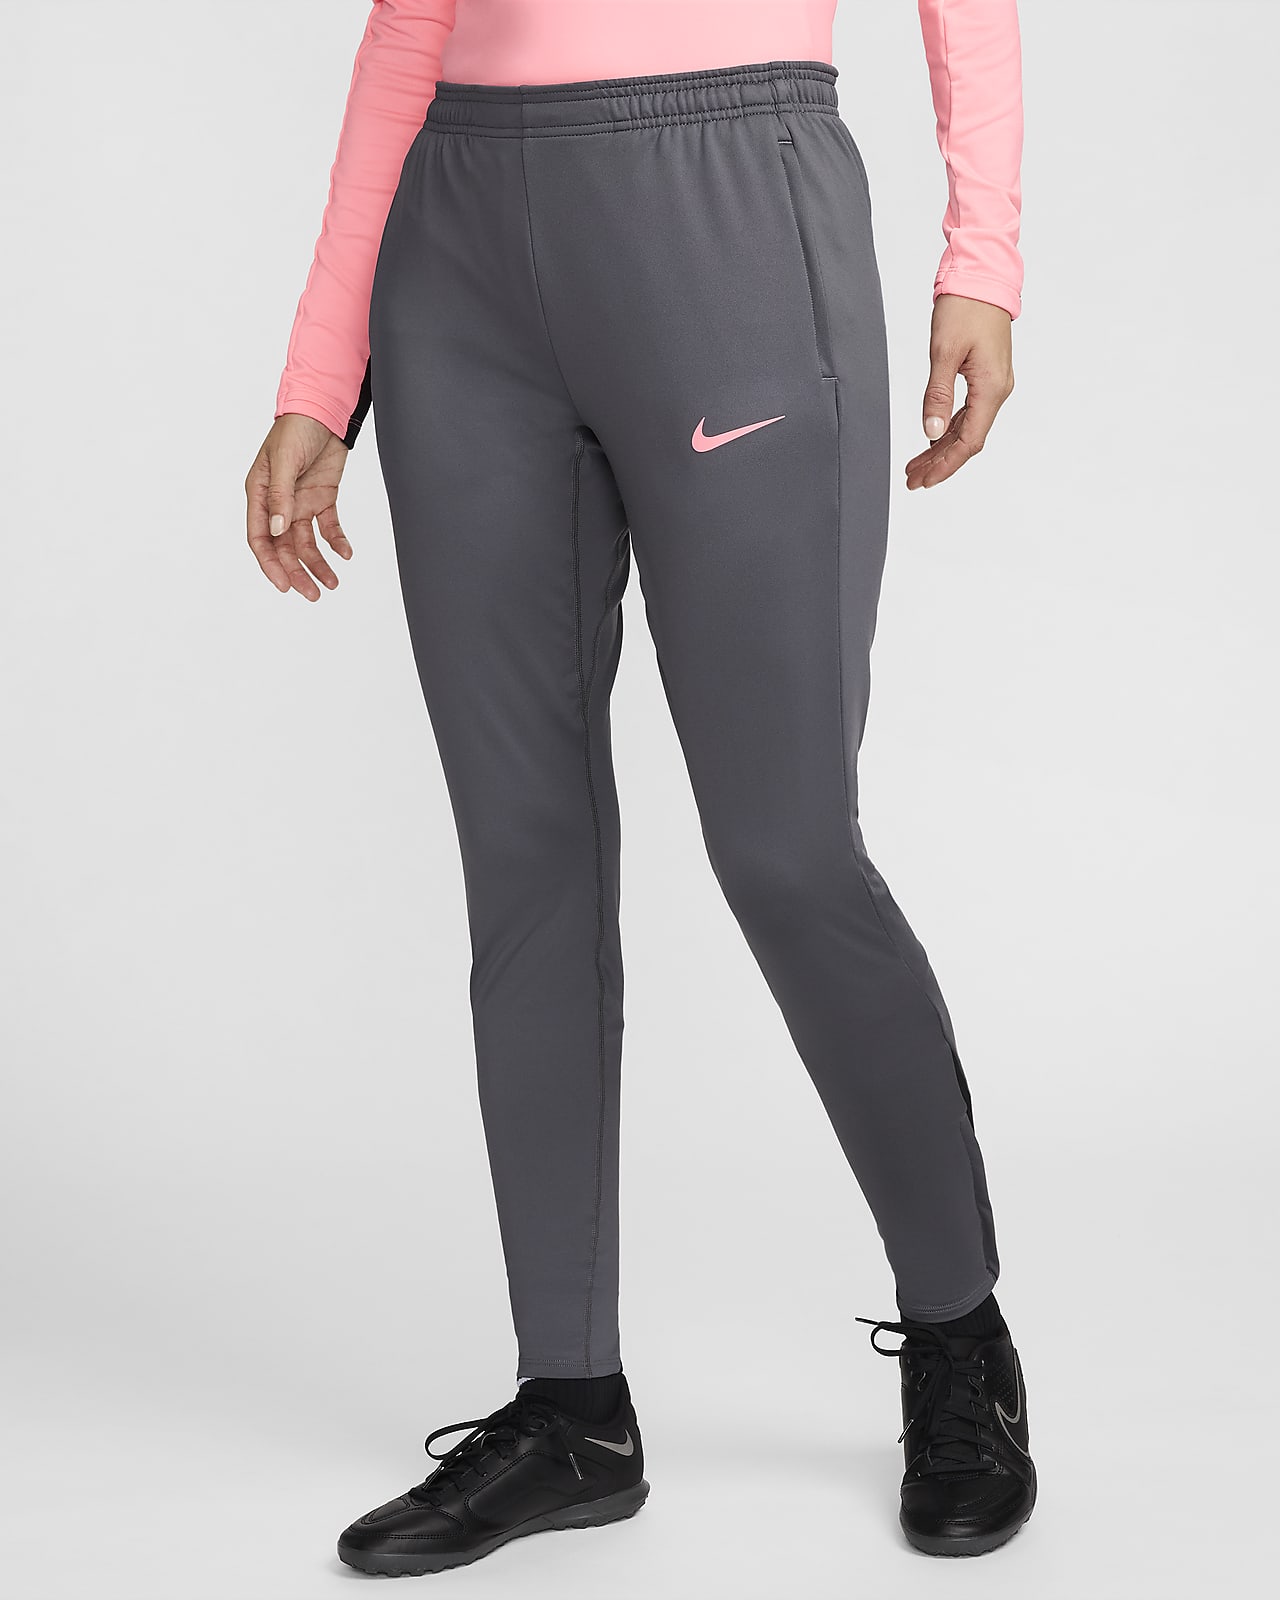 Γυναικείο ποδοσφαιρικό παντελόνι Dri-FIT Nike Strike